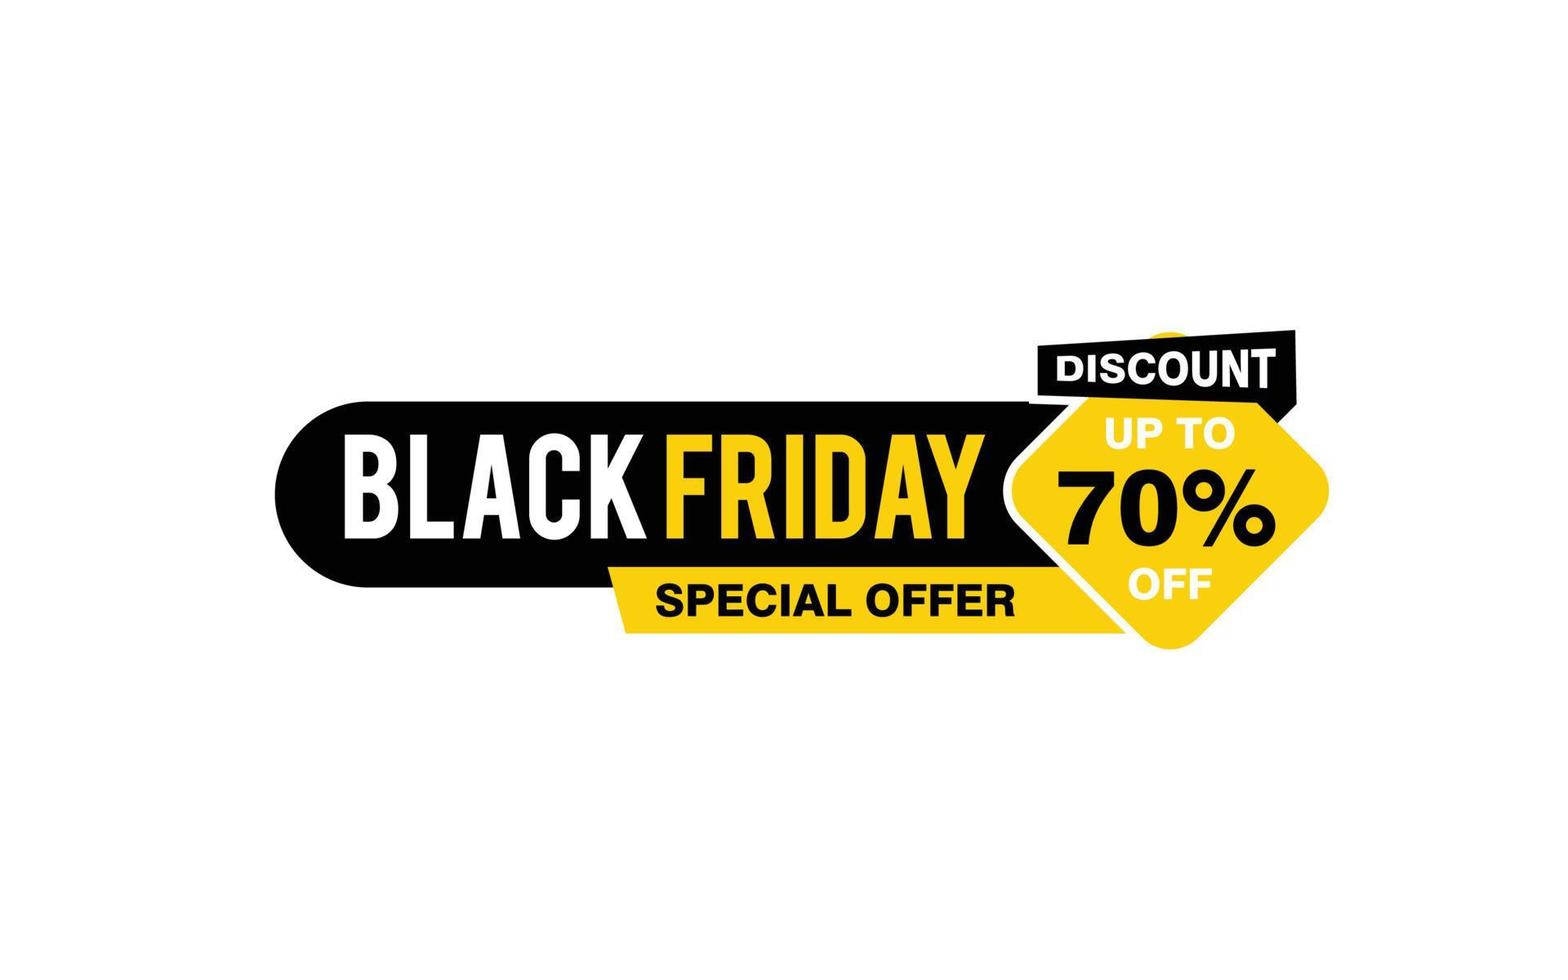 70 Prozent Rabatt Black Friday Angebot, Räumung, Werbebanner-Layout mit Aufkleberstil. vektor